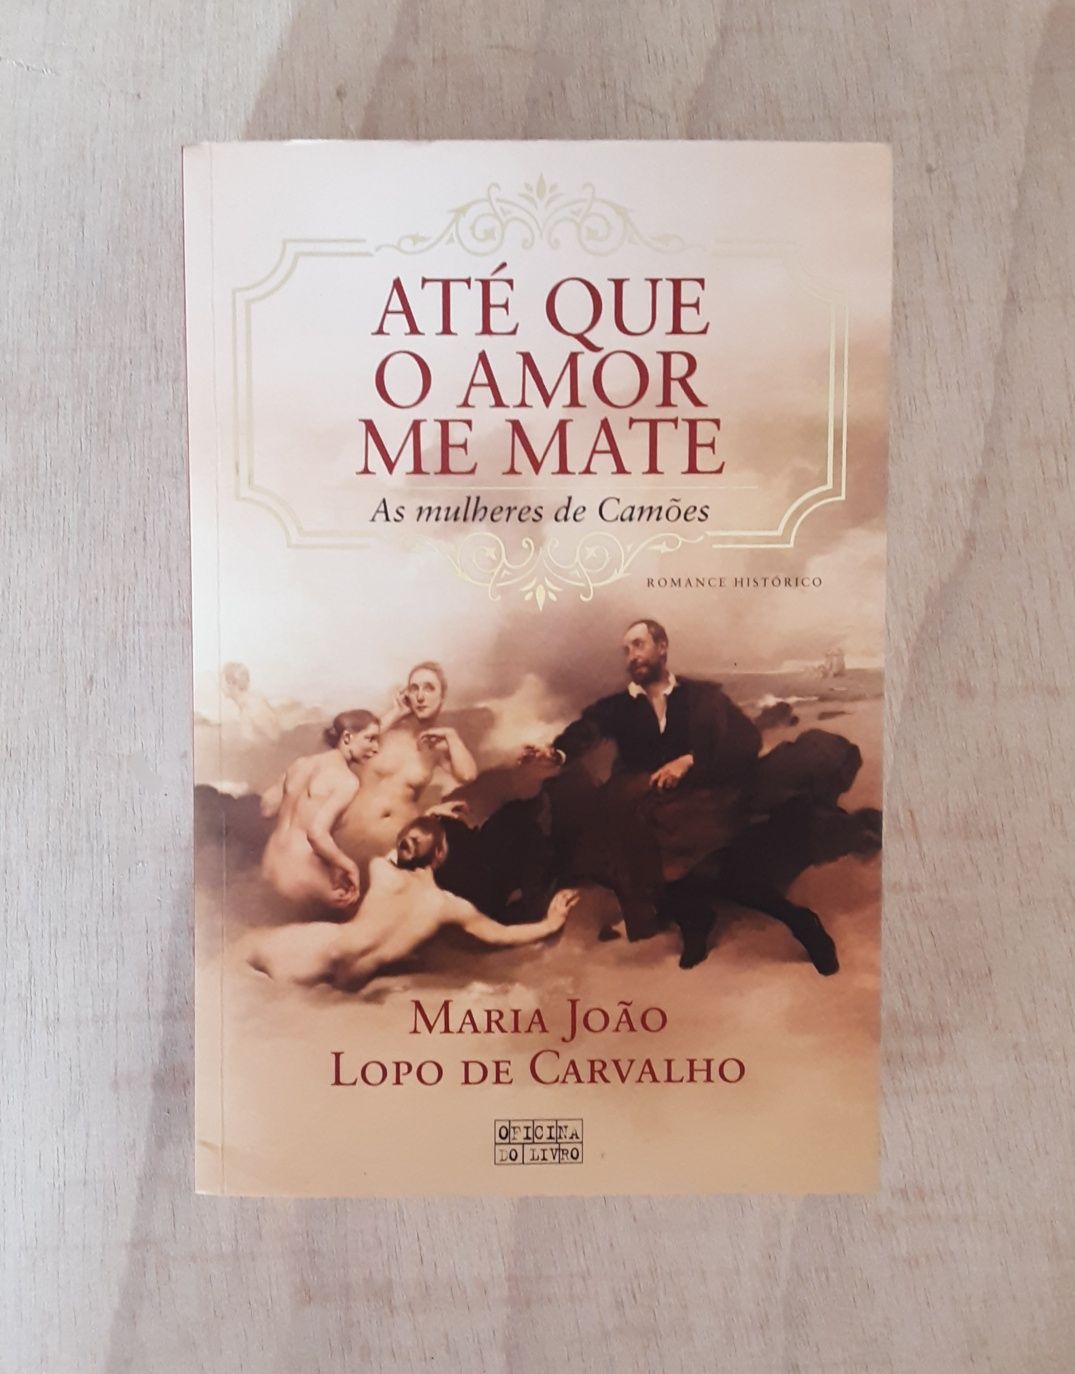 Livro "Até que o amor me mate" de Maria João Lopo de Carvalho